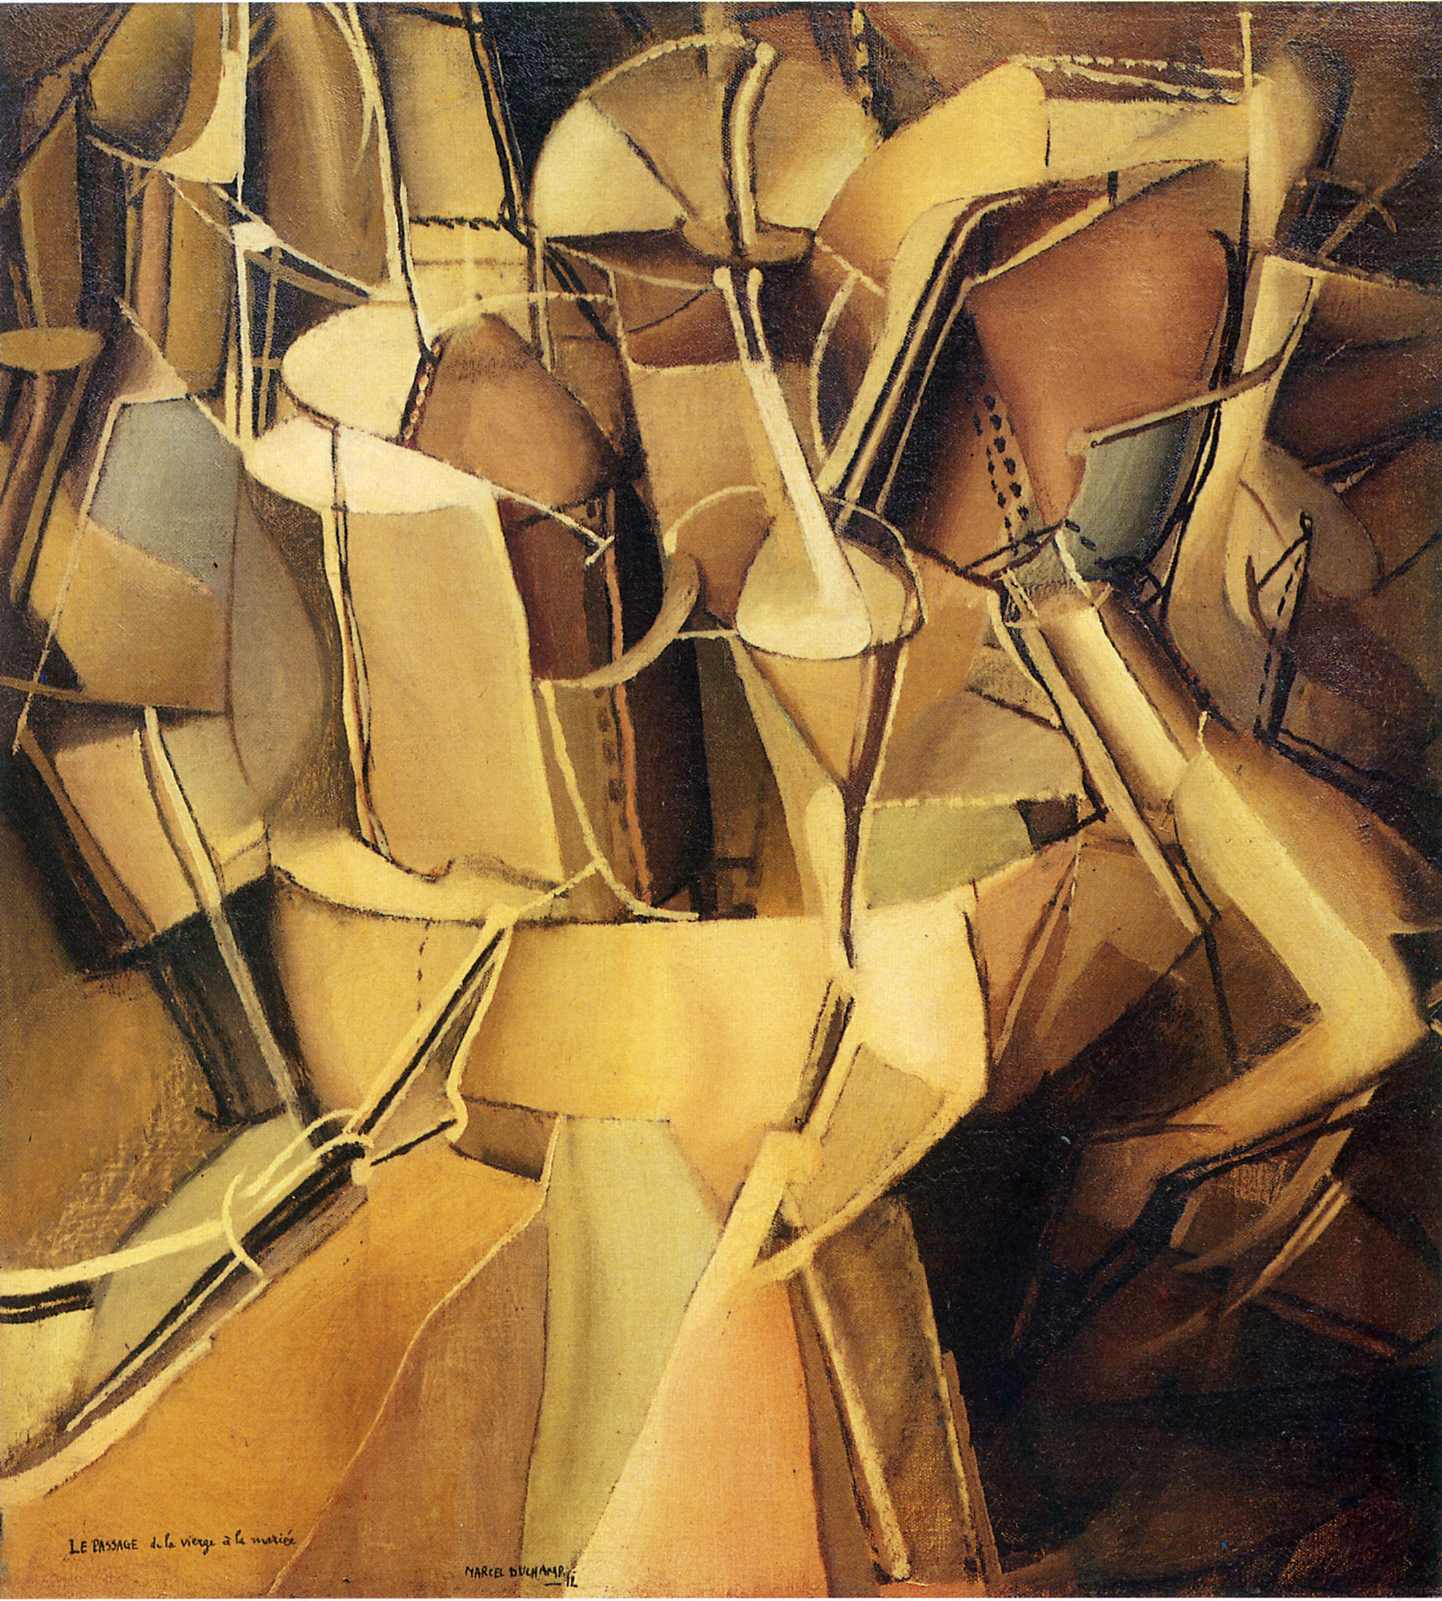 A szűz átalakulása feleséggé by Marcel Duchamp - 1912 - 59 x 53,5 cm 